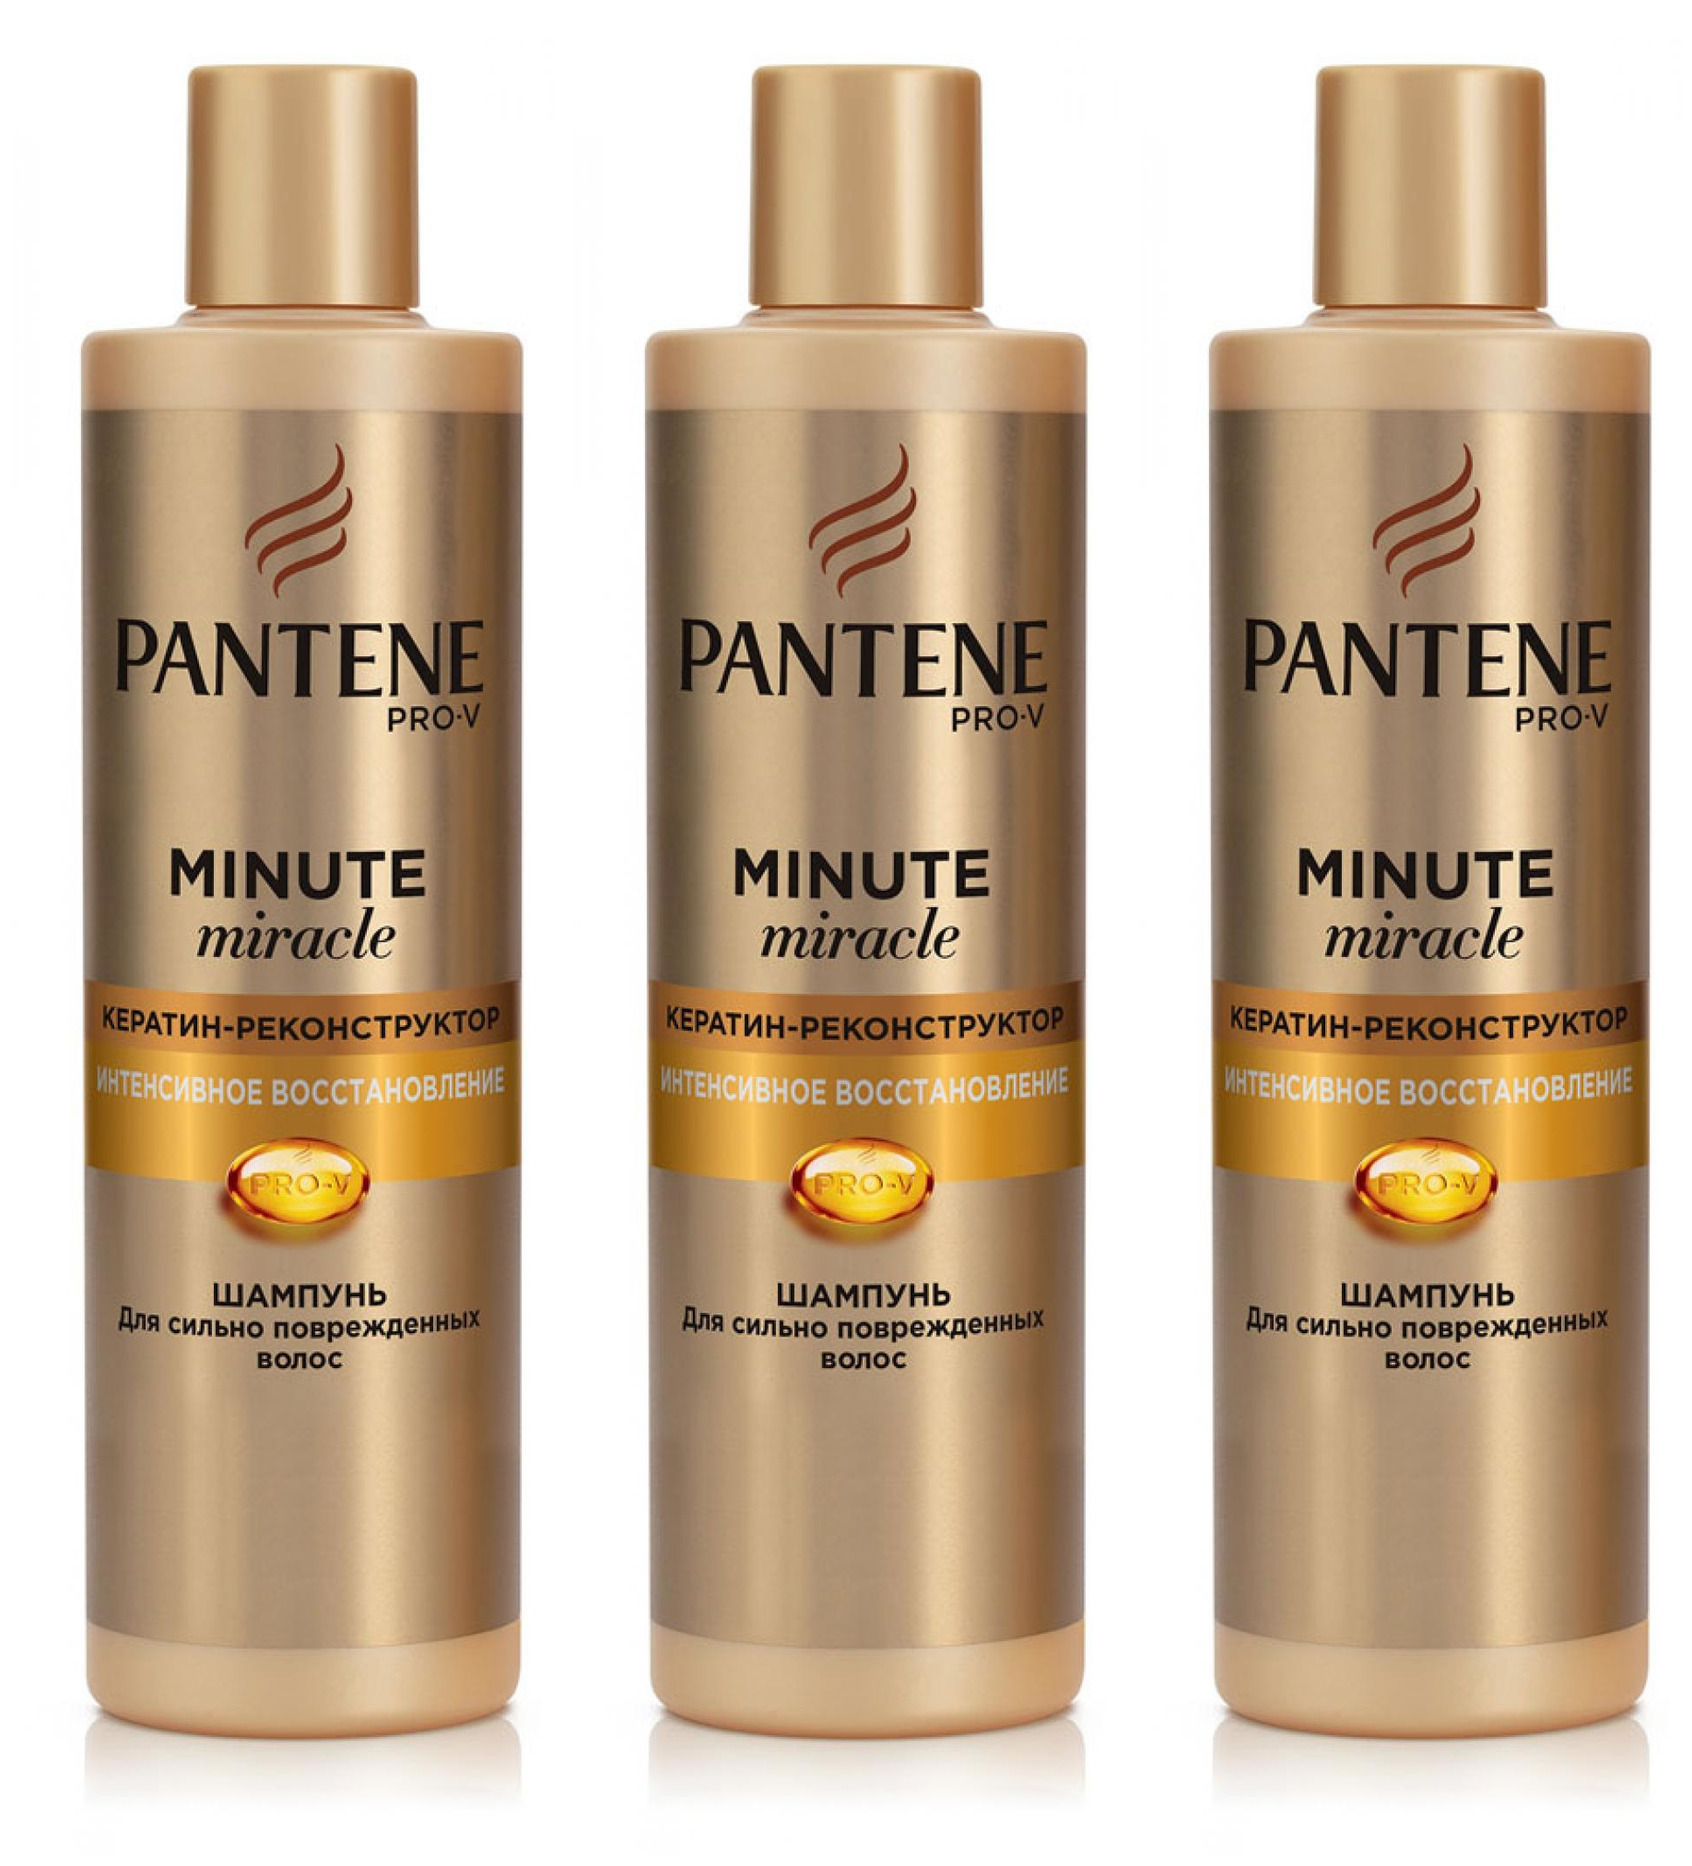 Пантин для восстановления волос. Шампунь Pantene Pro-v. Pantene minute Miracle шампунь. Пантин шампунь интенсивное восстановление 400. Пантин прови 2 в 1.